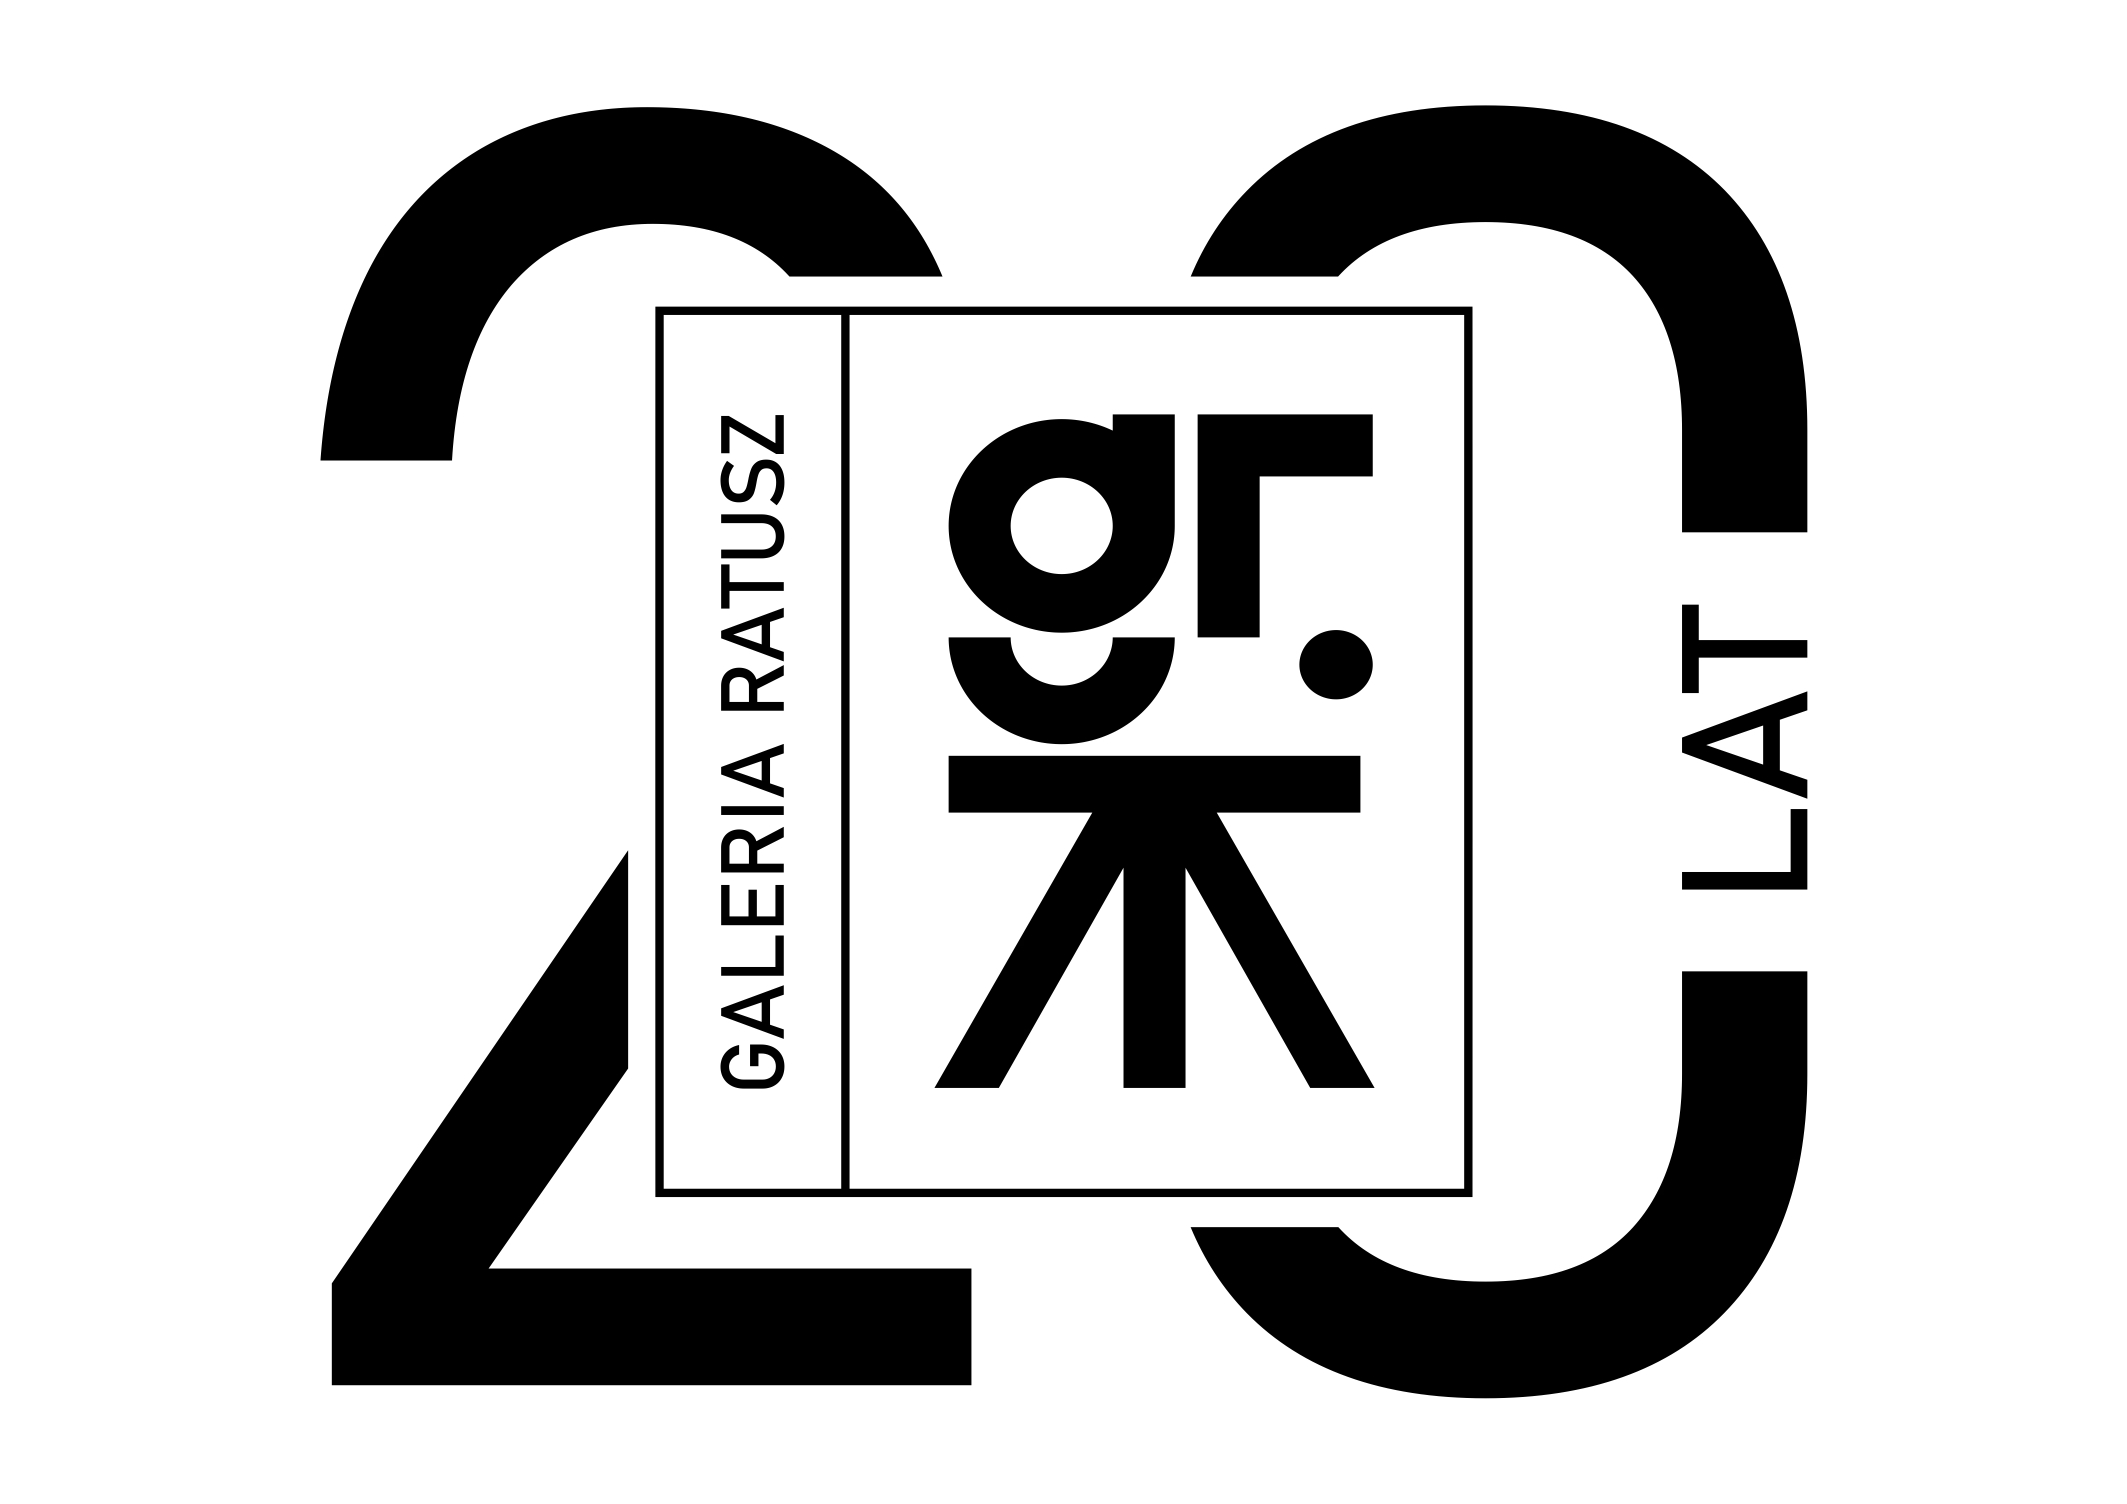 Logo Galerii Ratusz w wersji jubileuszowej